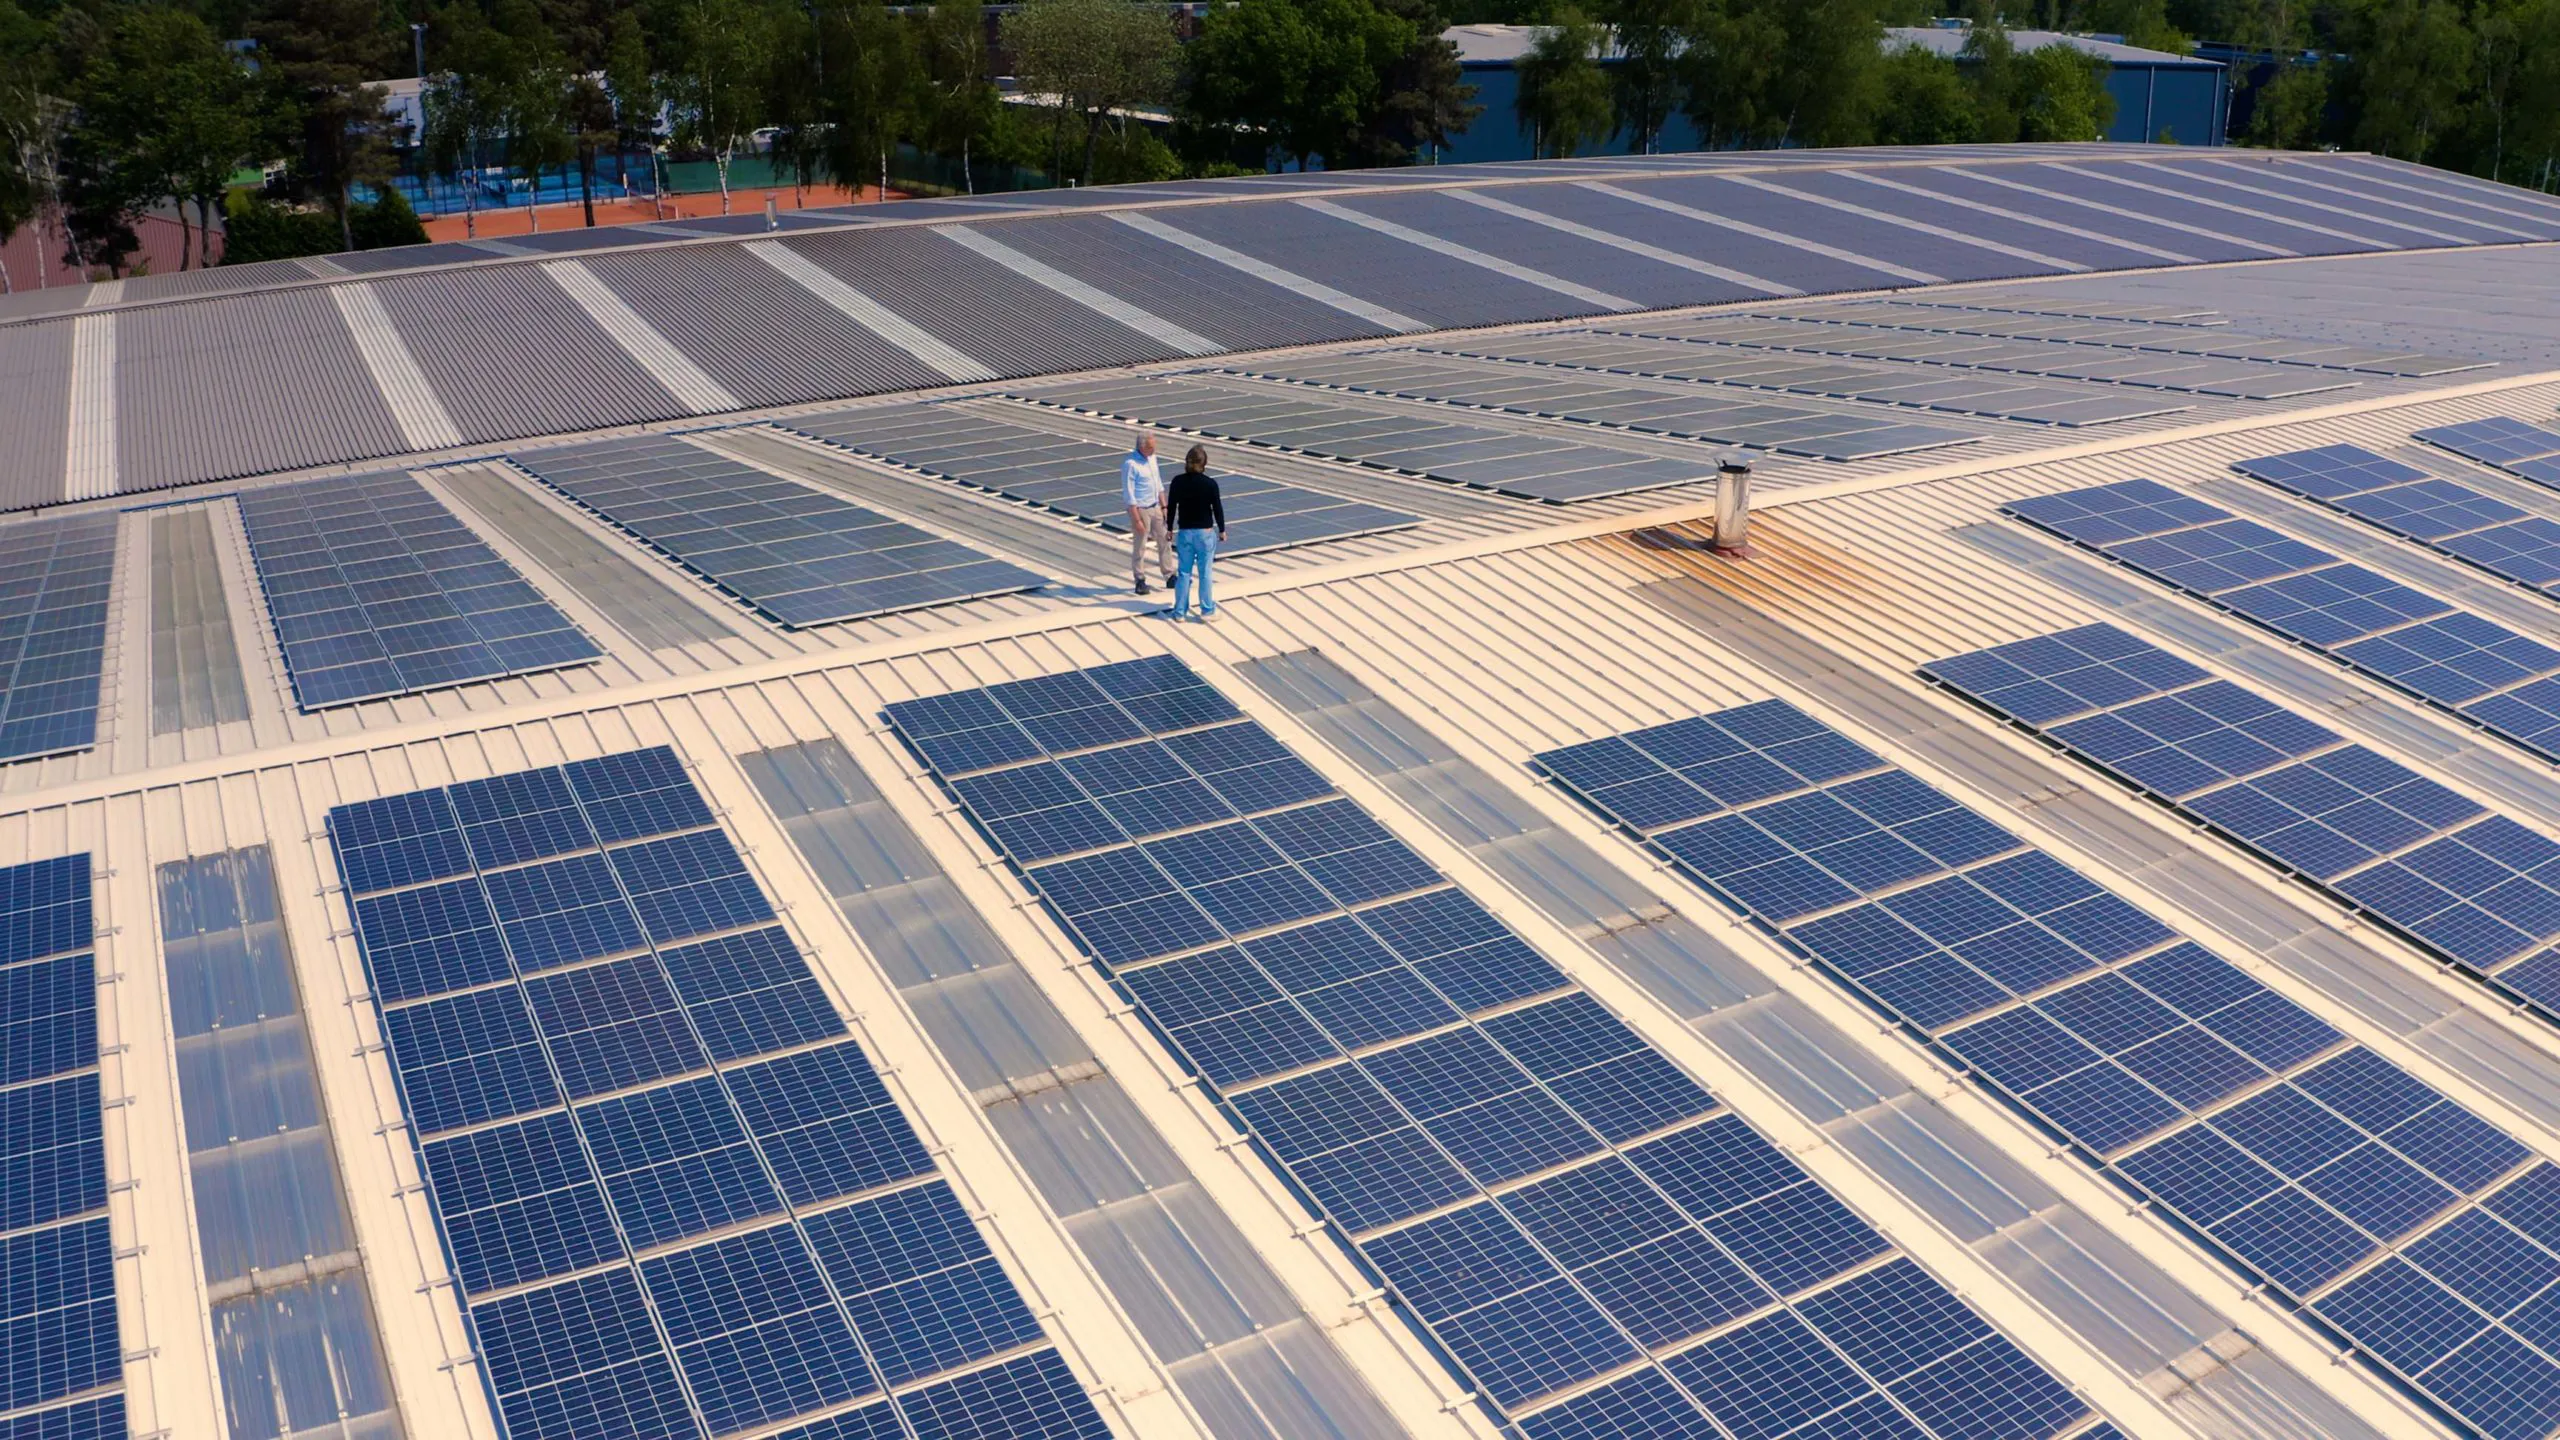 Luc Martens van Solar Power Systems die samen met de klant op een dak van een bedrijf vol zonnepanelen staat.